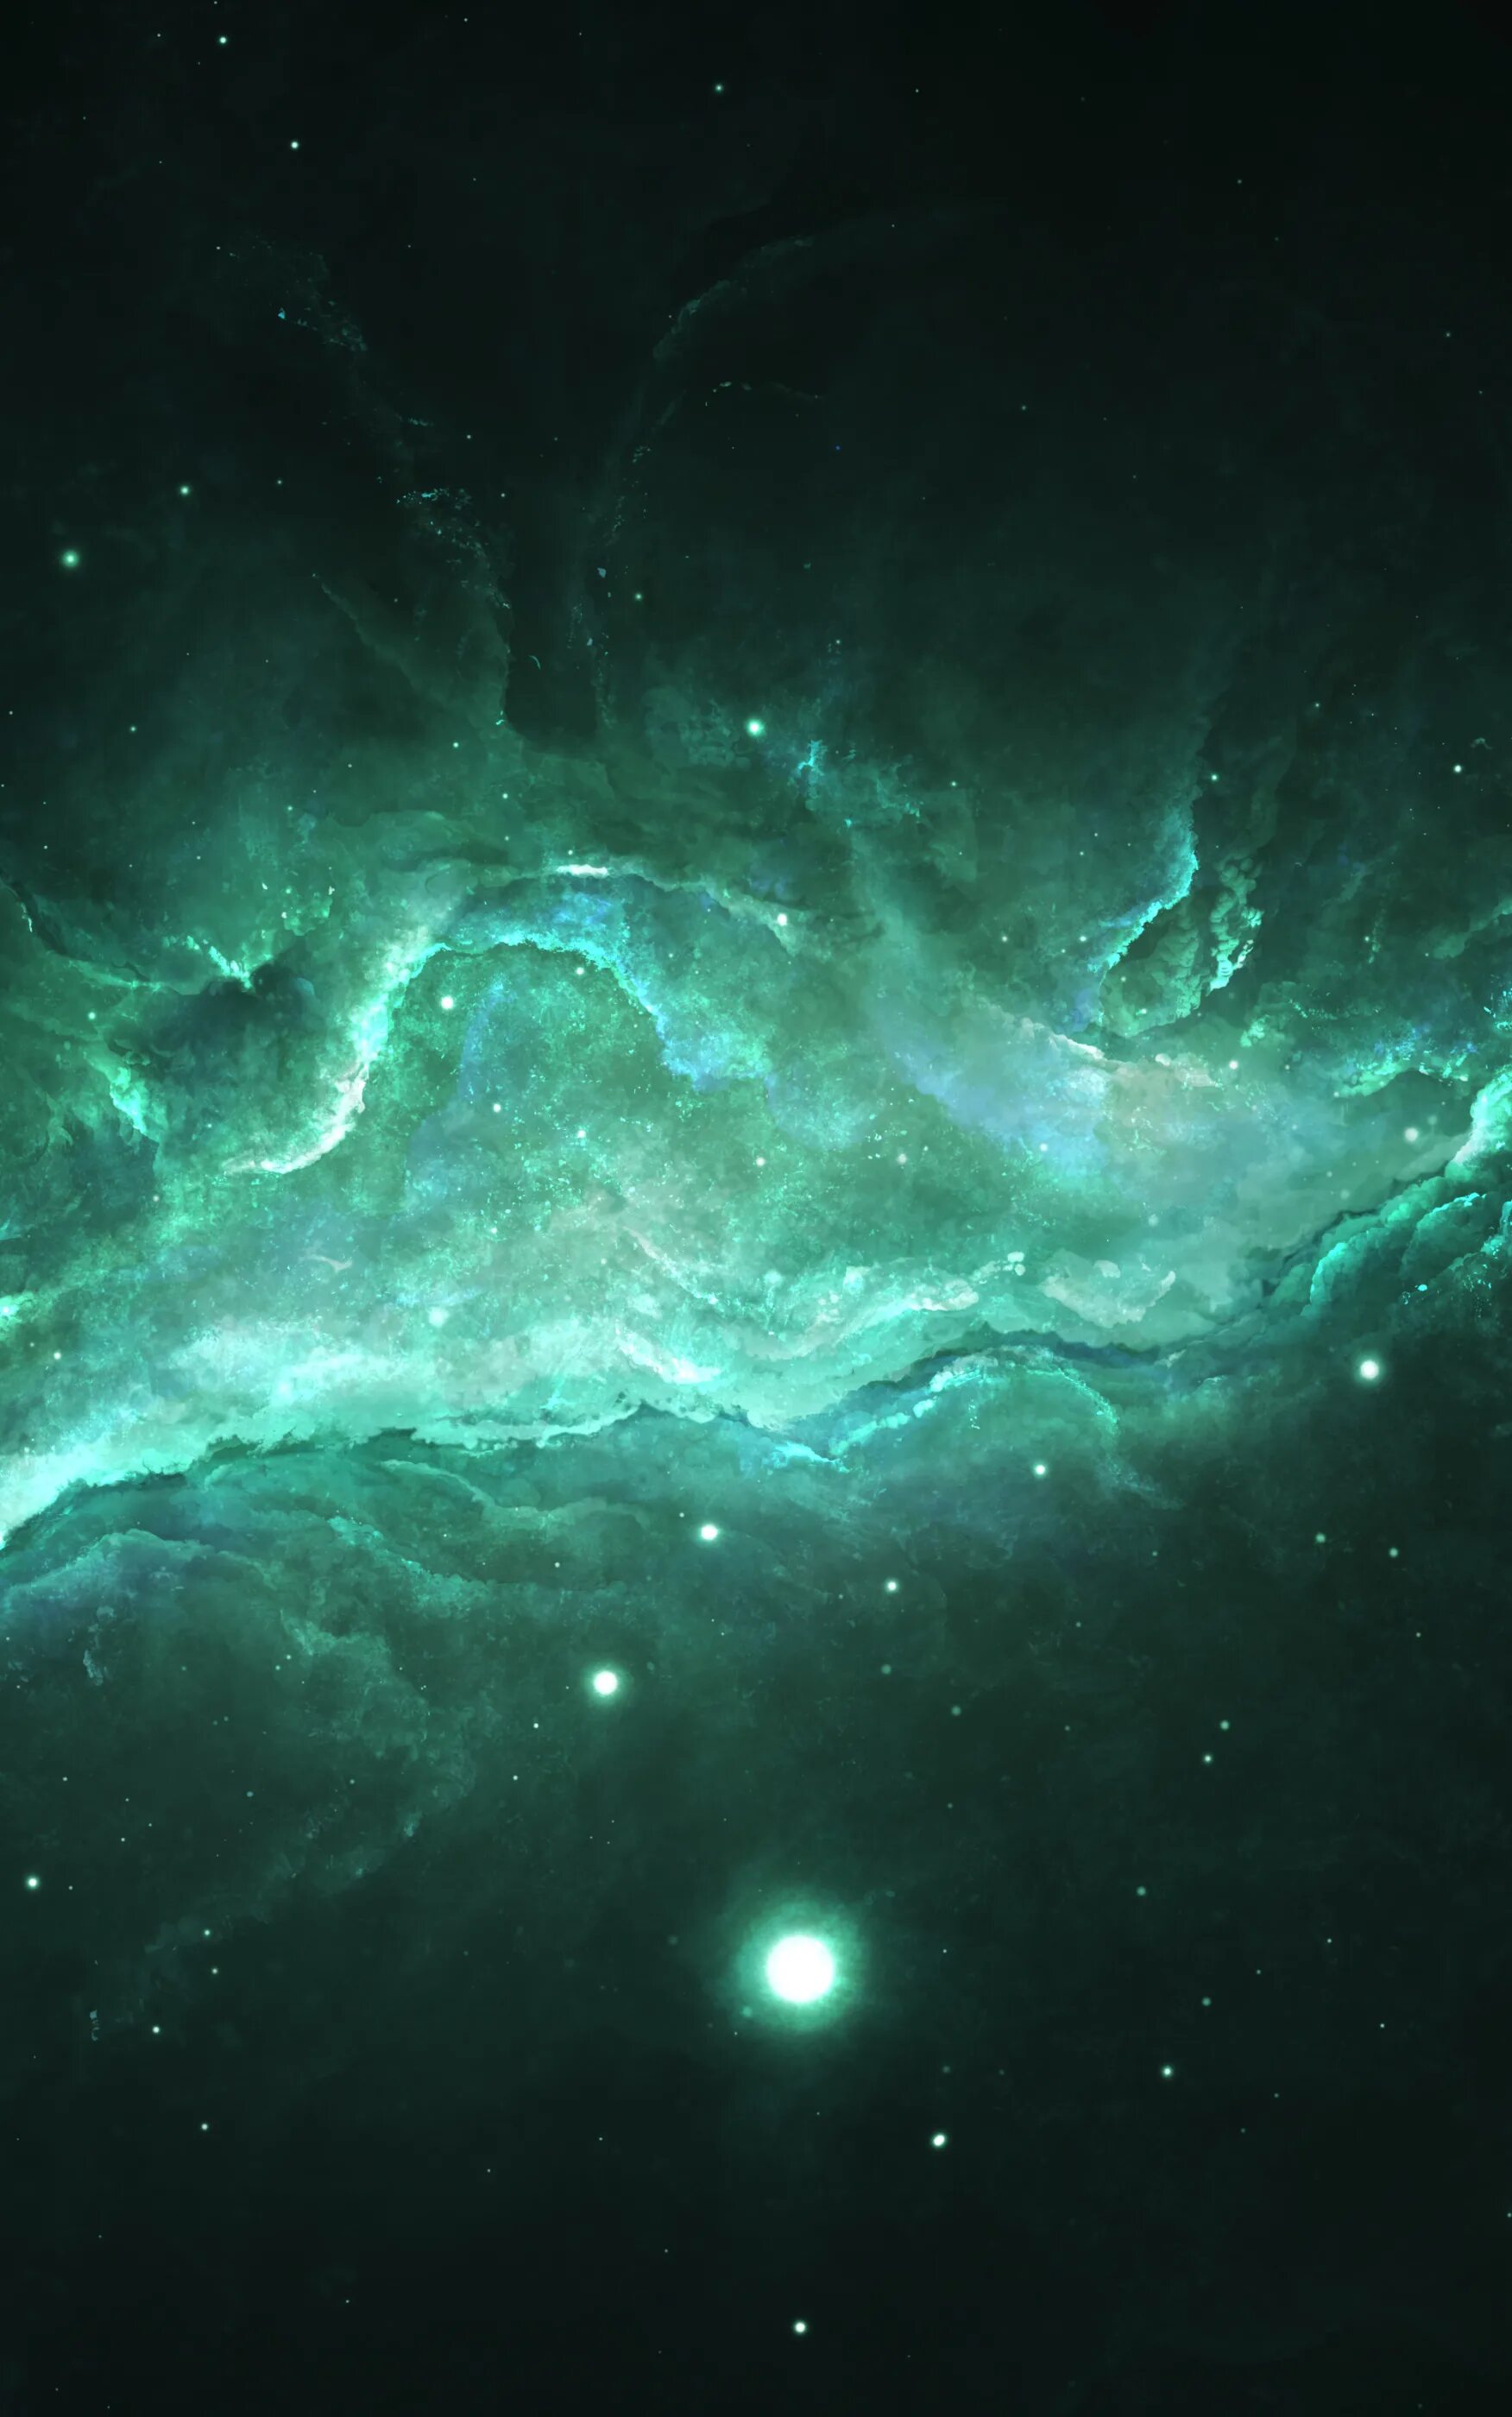 Глубины космоса. Зеленый космос. З̶е̶л̶е̶н̶ы̶й̶ к̶о̶с̶м̶а̶с̶. Изображение 2000 2000 пикселей